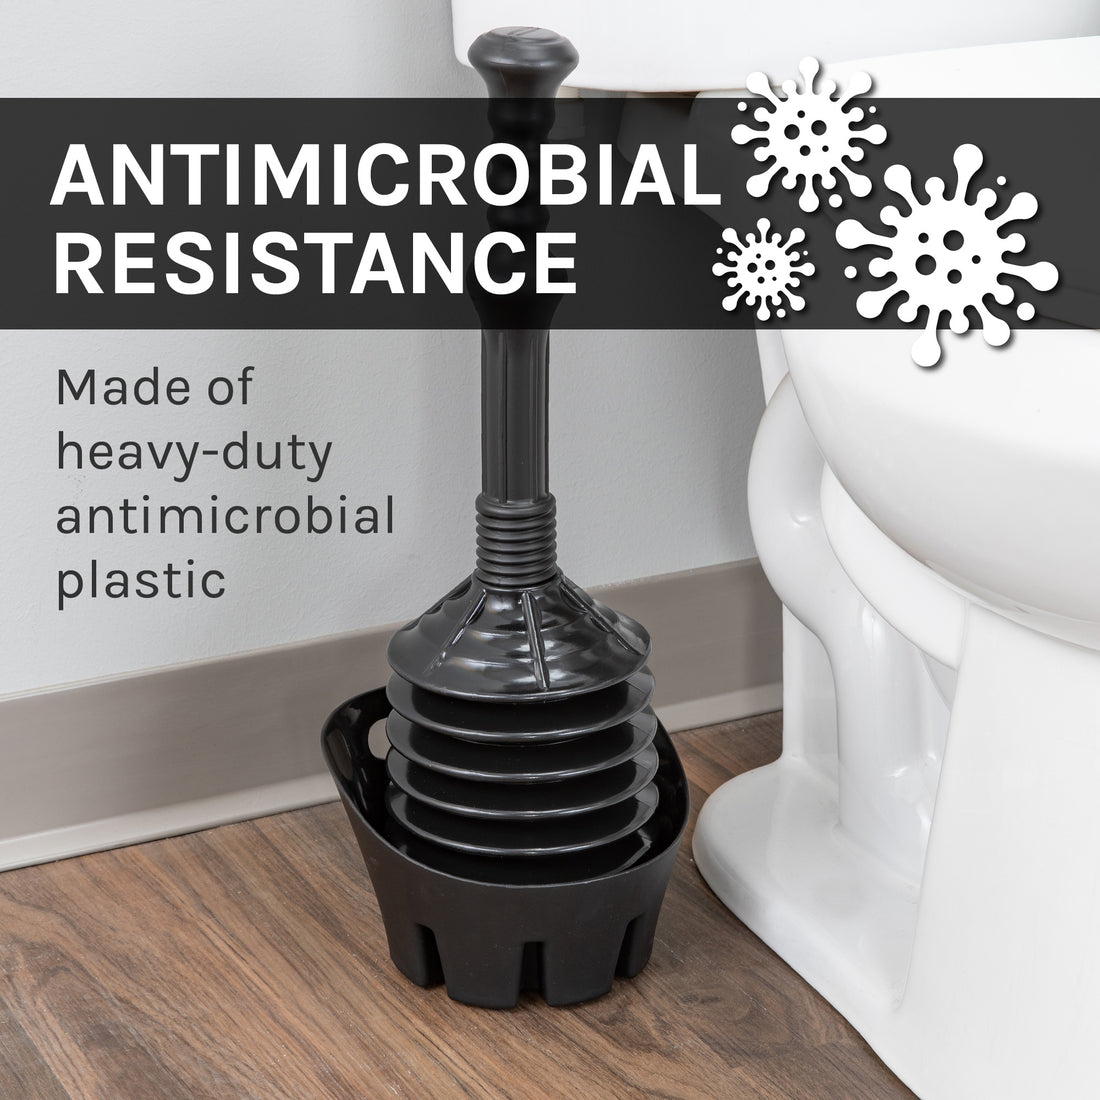 Antimicrobial Bellows Accordion Toilet Plunger with Black Storage Tray (Black) - Utility sinks vanites Tehila